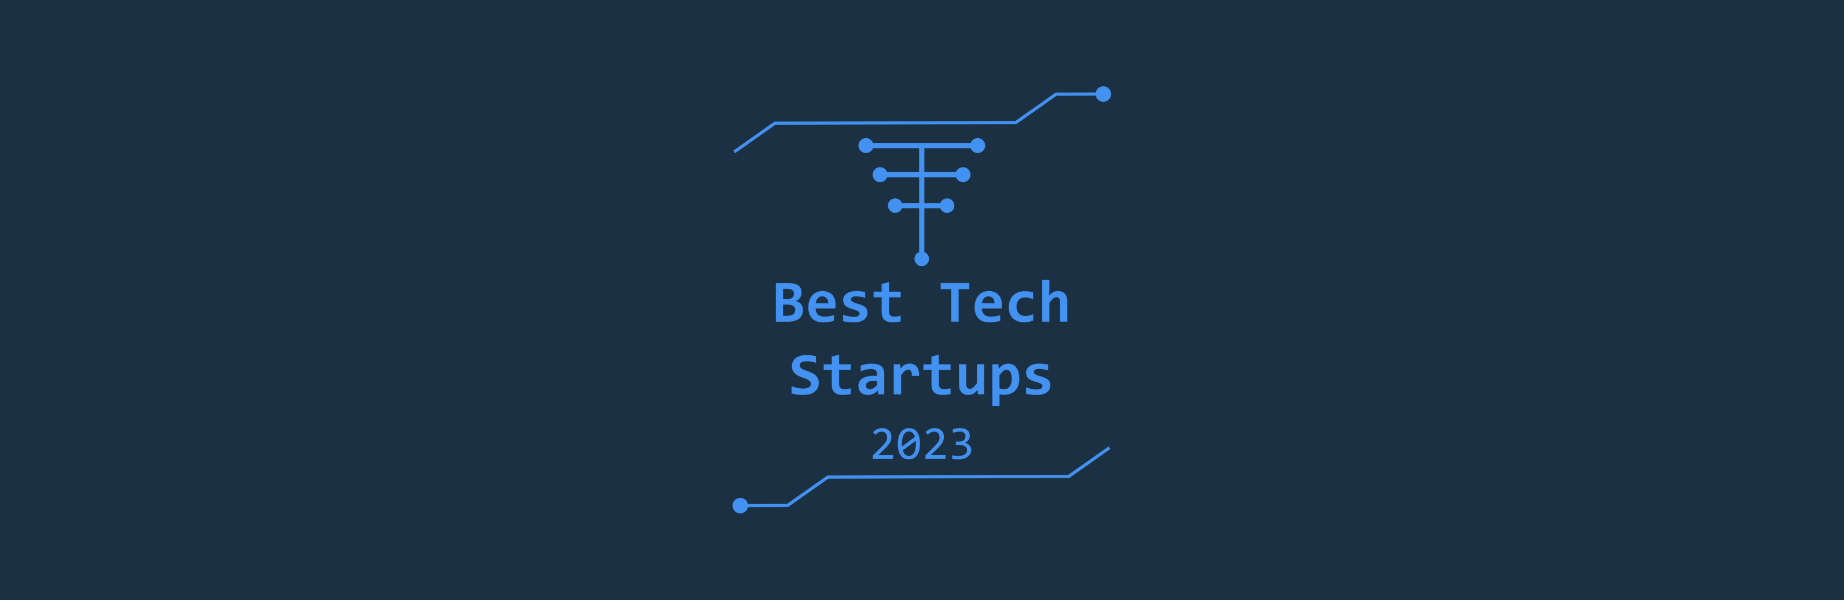 ringorang named best tech startup in 2023 tech tribune